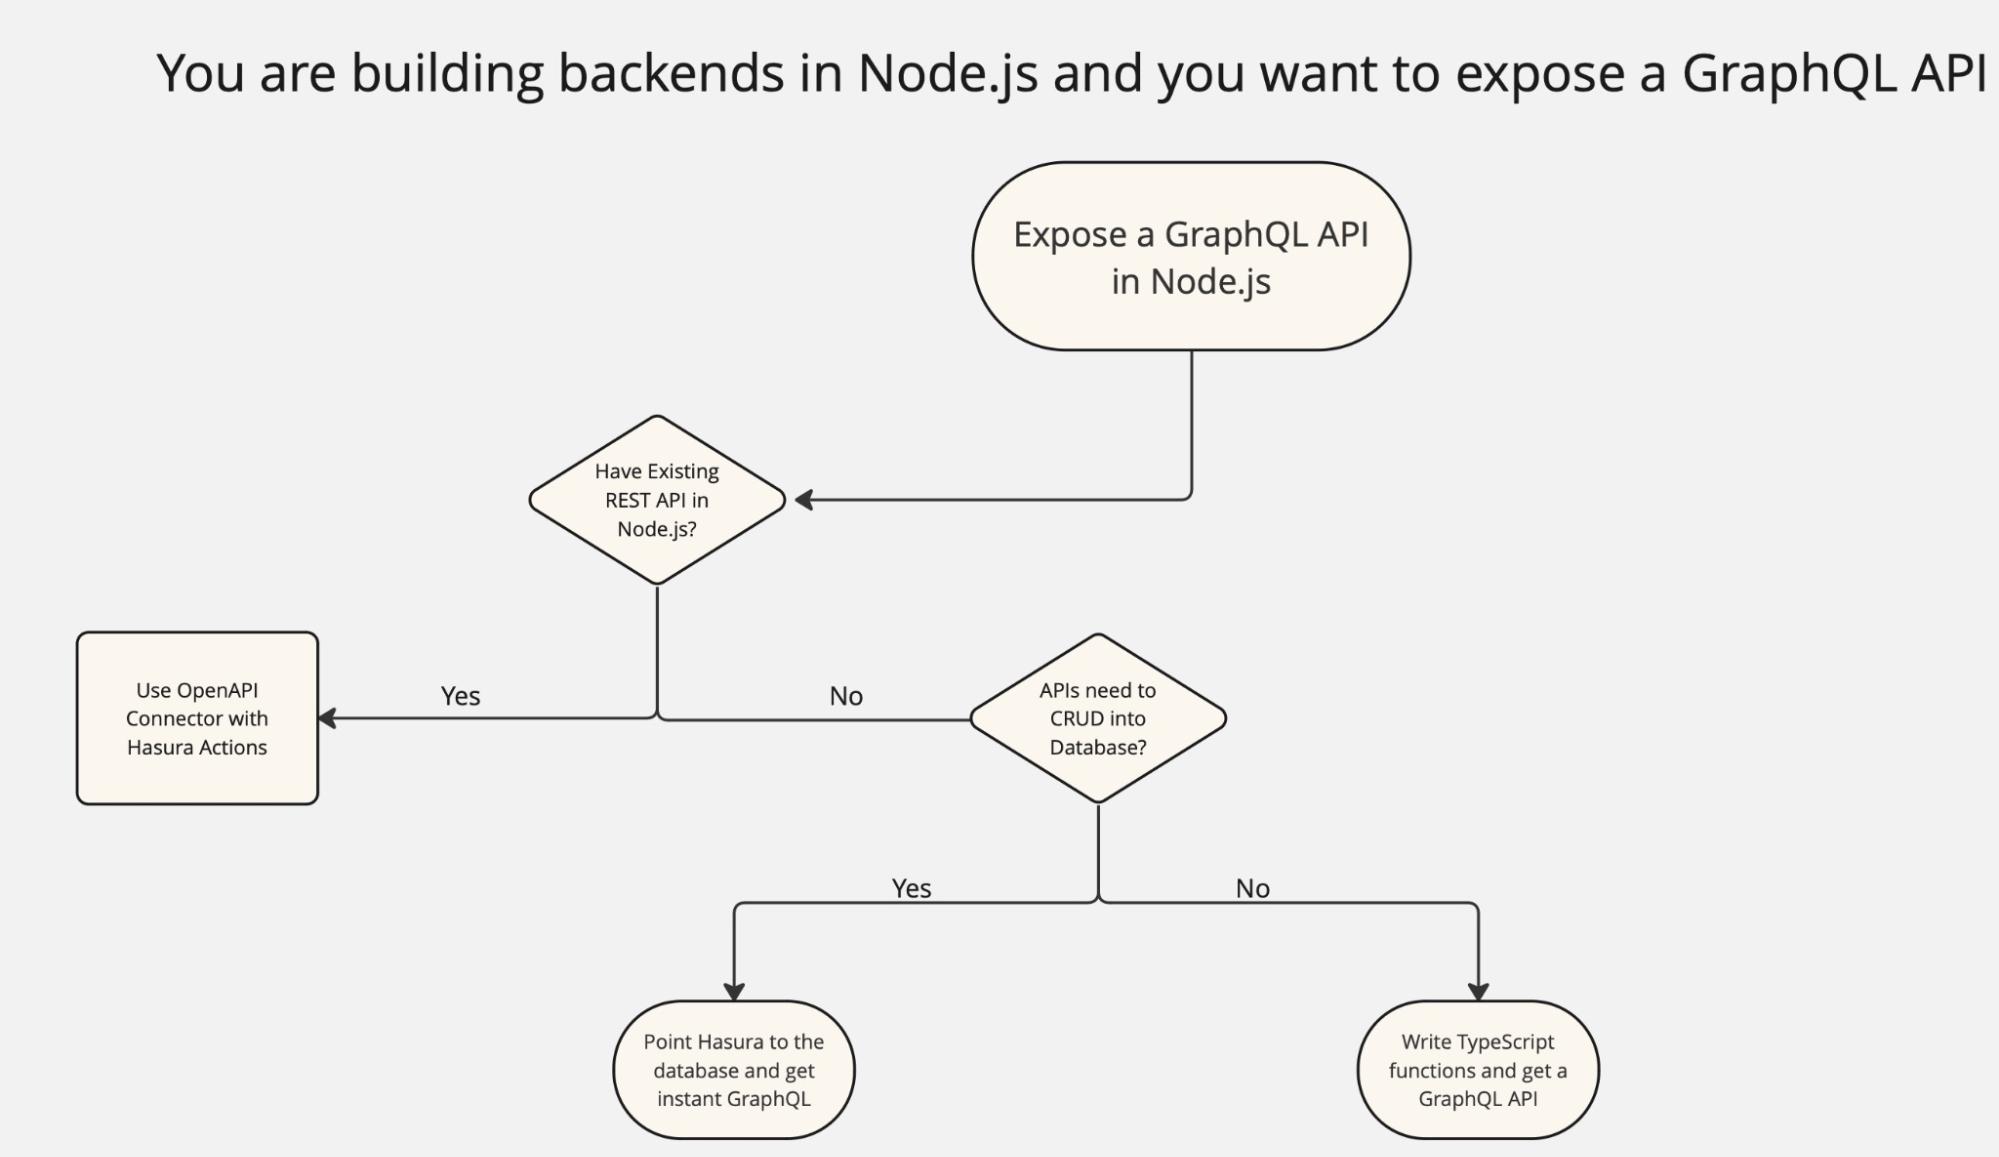 Expose a GraphQL API